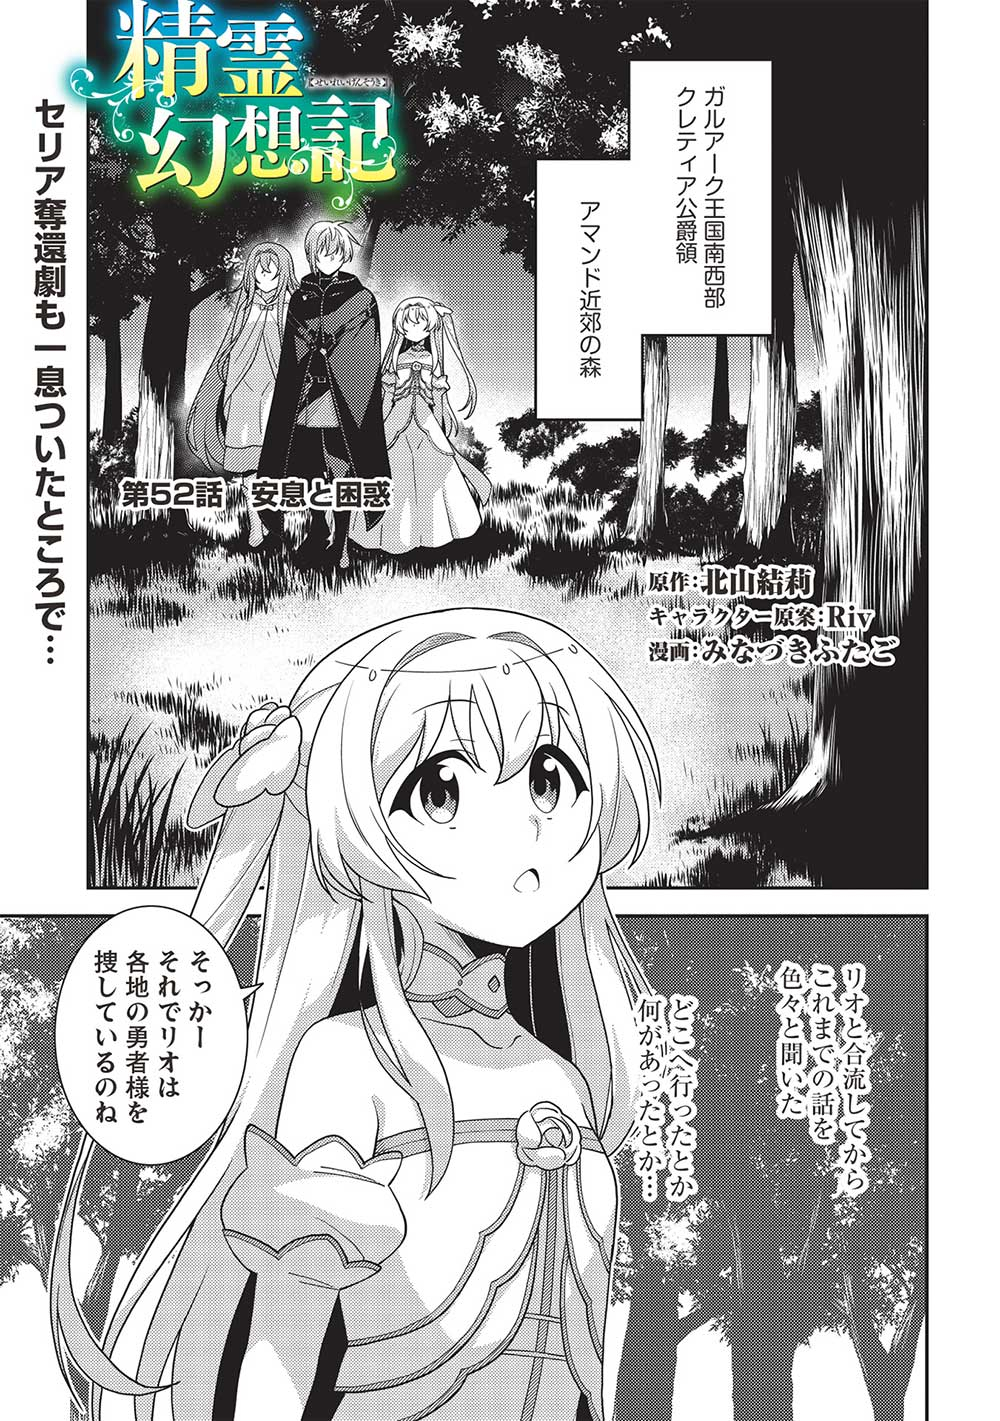 Seirei Gensouki - Chapter 52 - Page 1